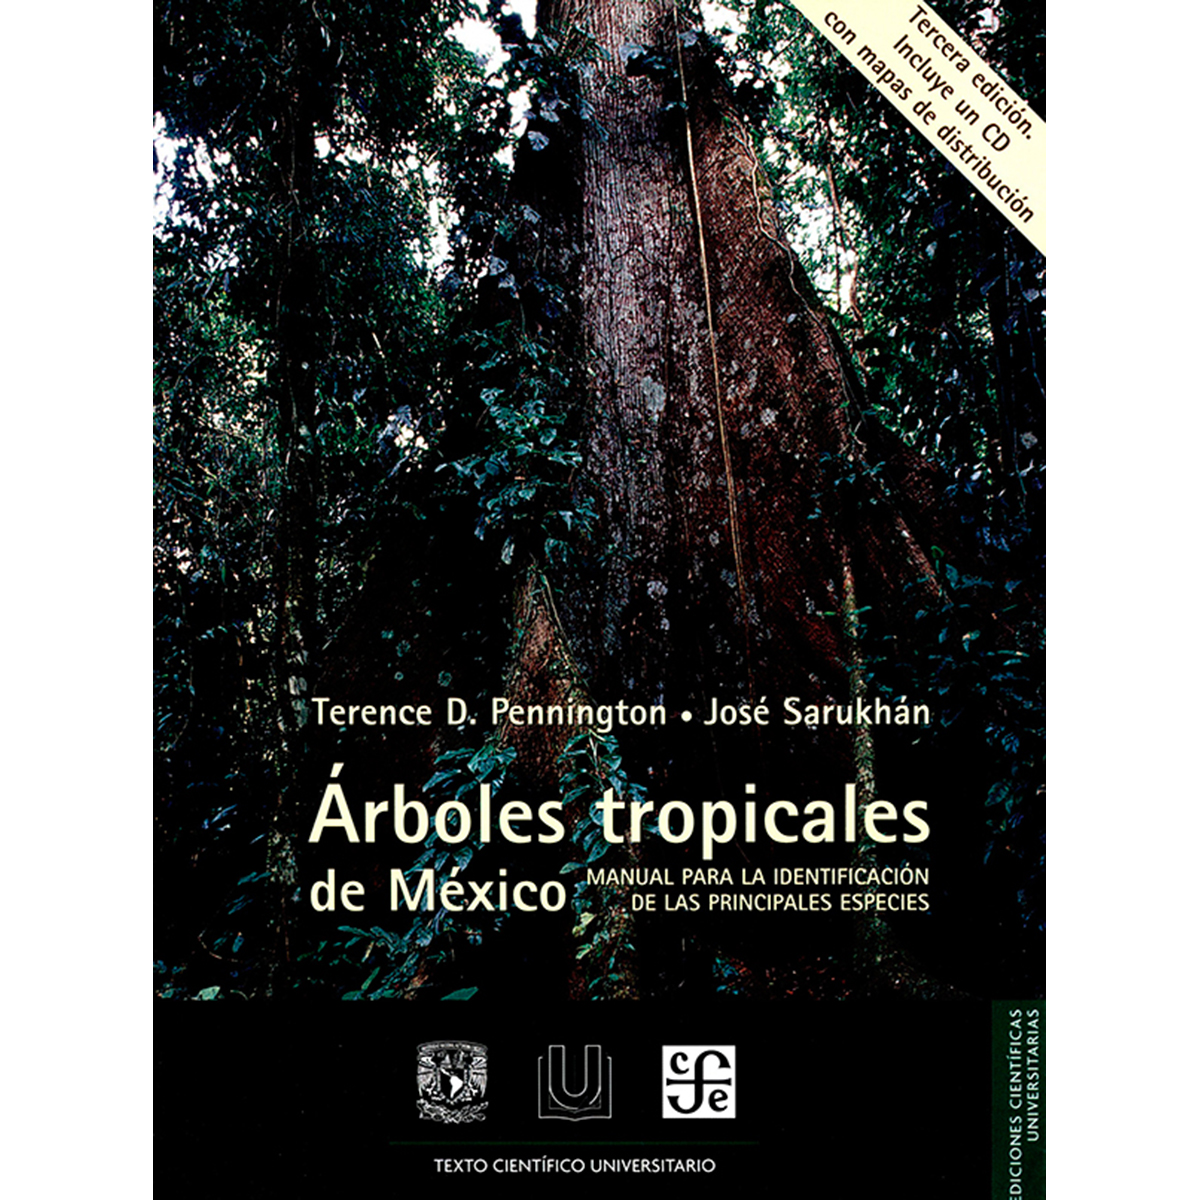 ARBOLES TROPICALES DE MÉXICO. MANUAL PARA LA IDENTIFICACIÓN DE LAS PRINCIPALES ESPECIES